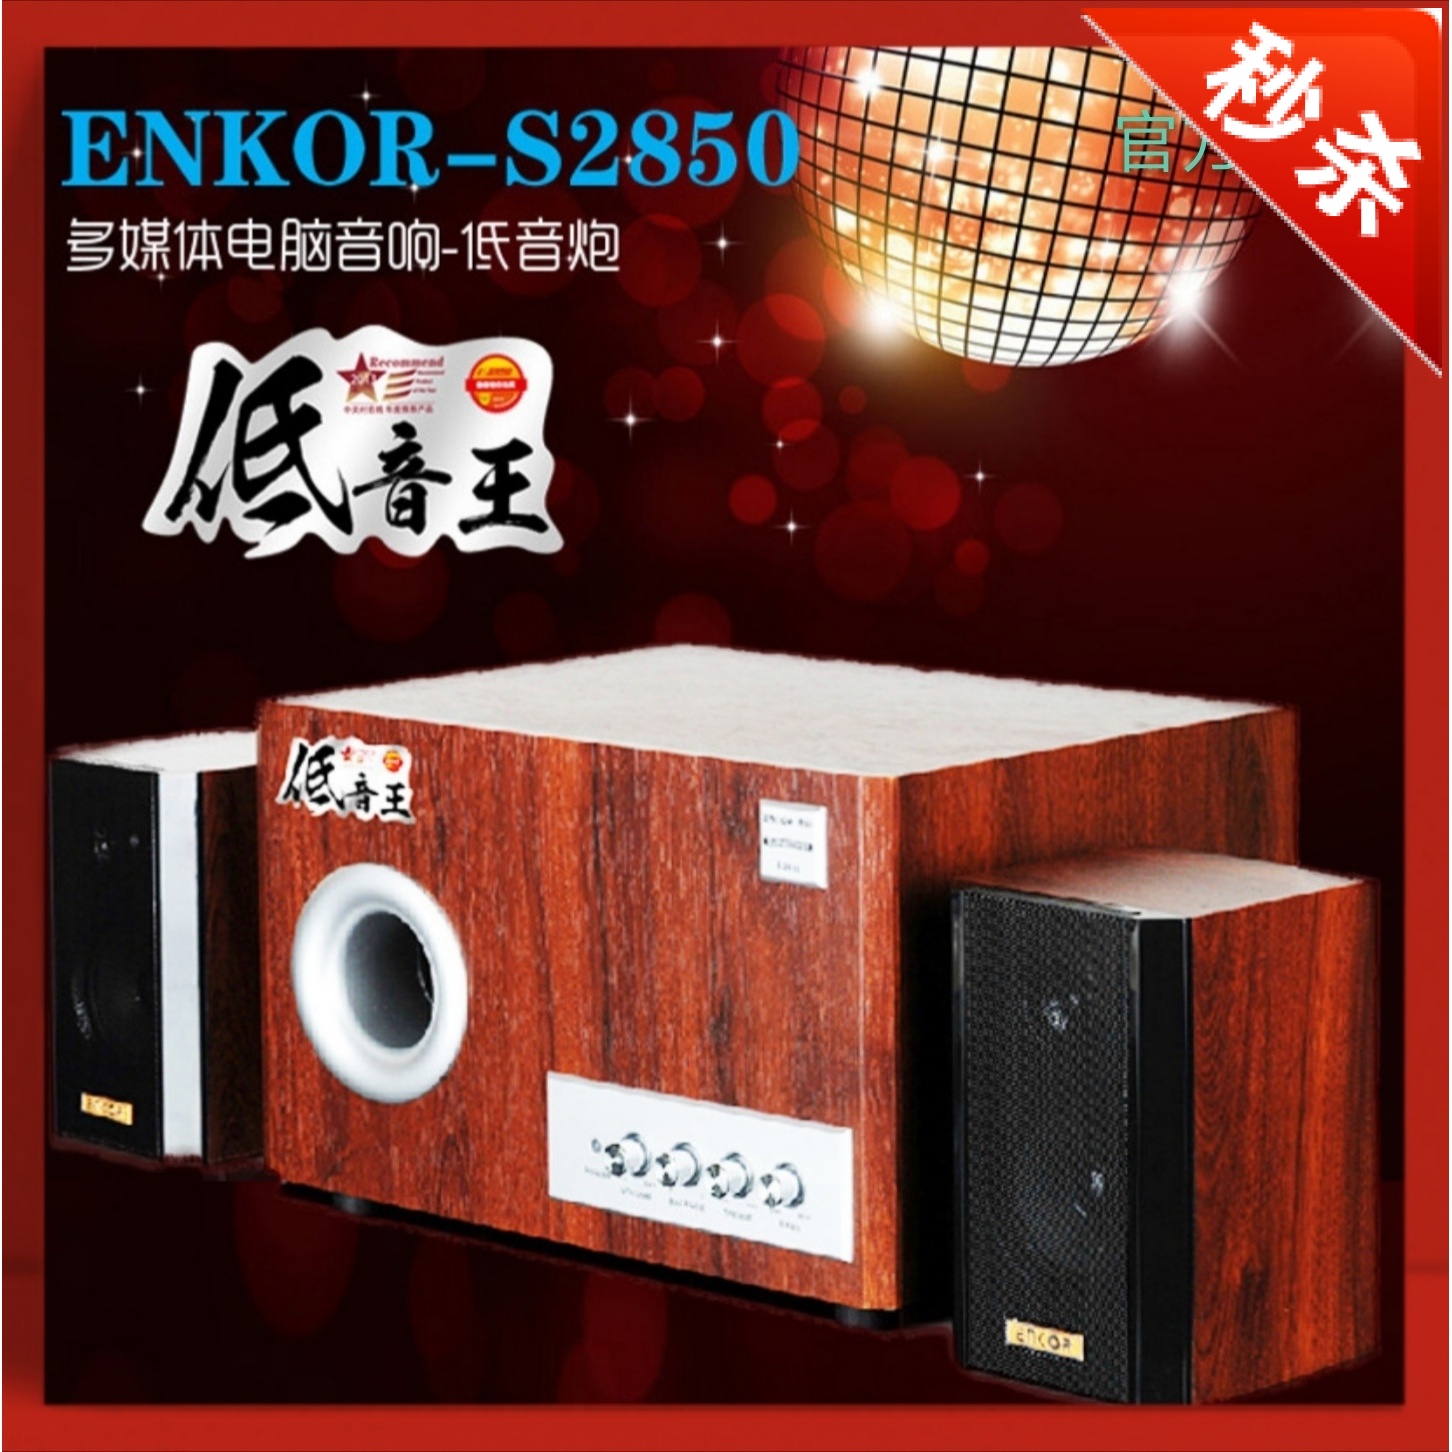 恩科ENKORS2850U多媒体电脑木桌面音箱家用U盘插卡笔记本低音直销